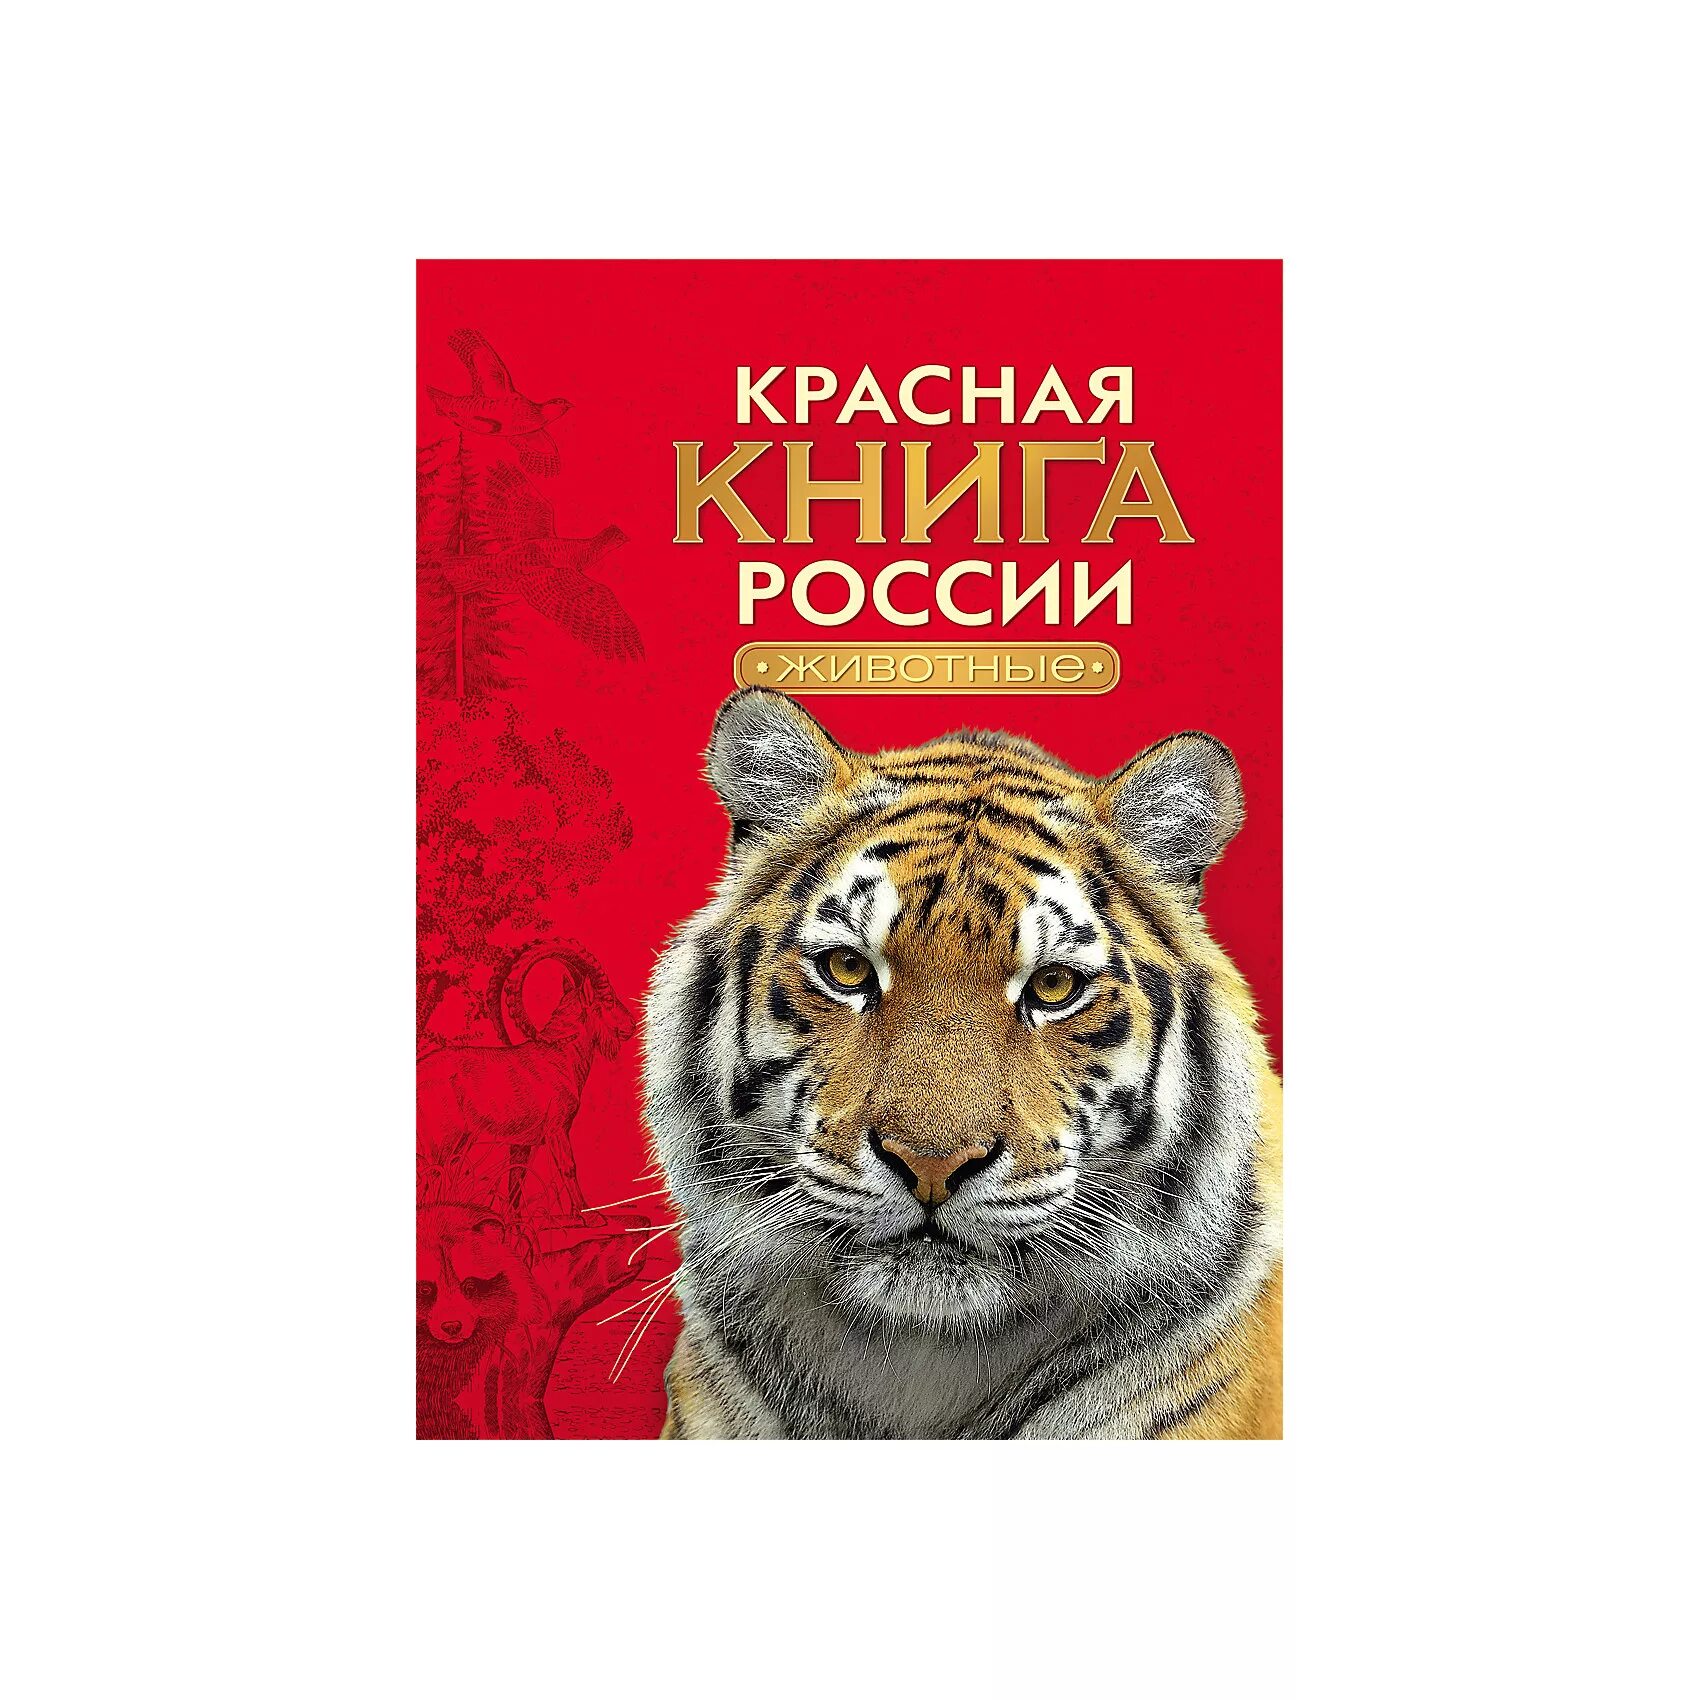 Исключительно красивая обложка красной книги россии